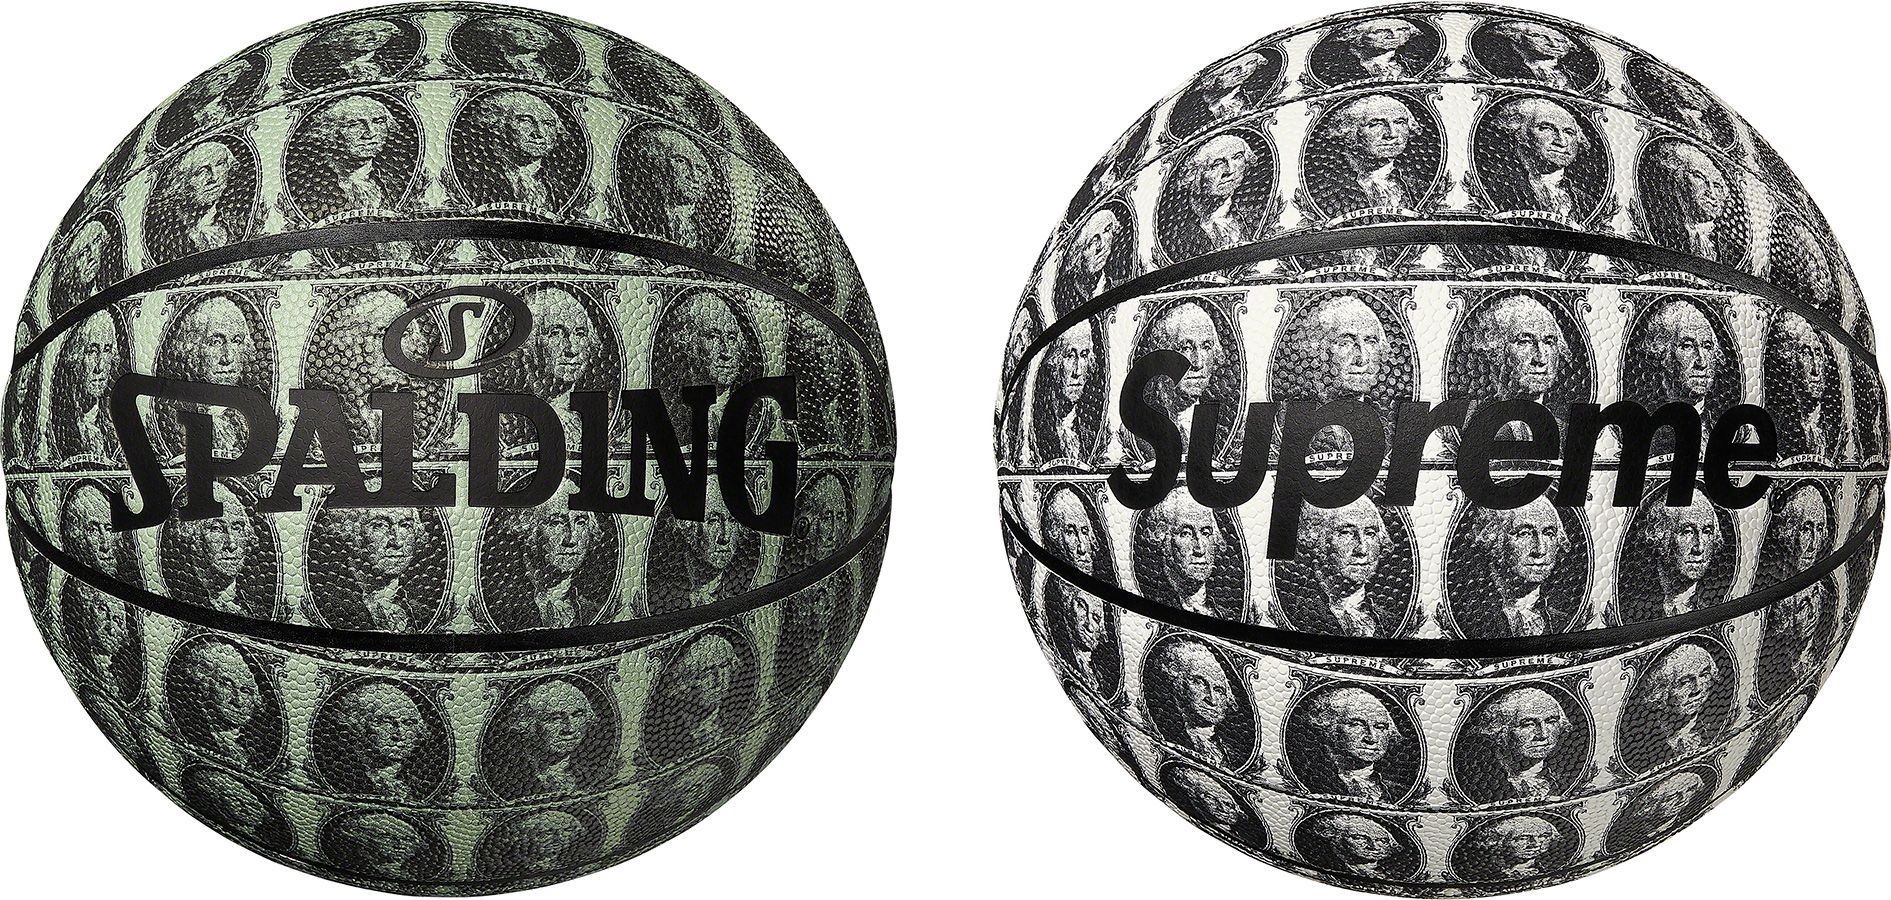 Supreme®/Spalding® Washington Basketball – Supreme